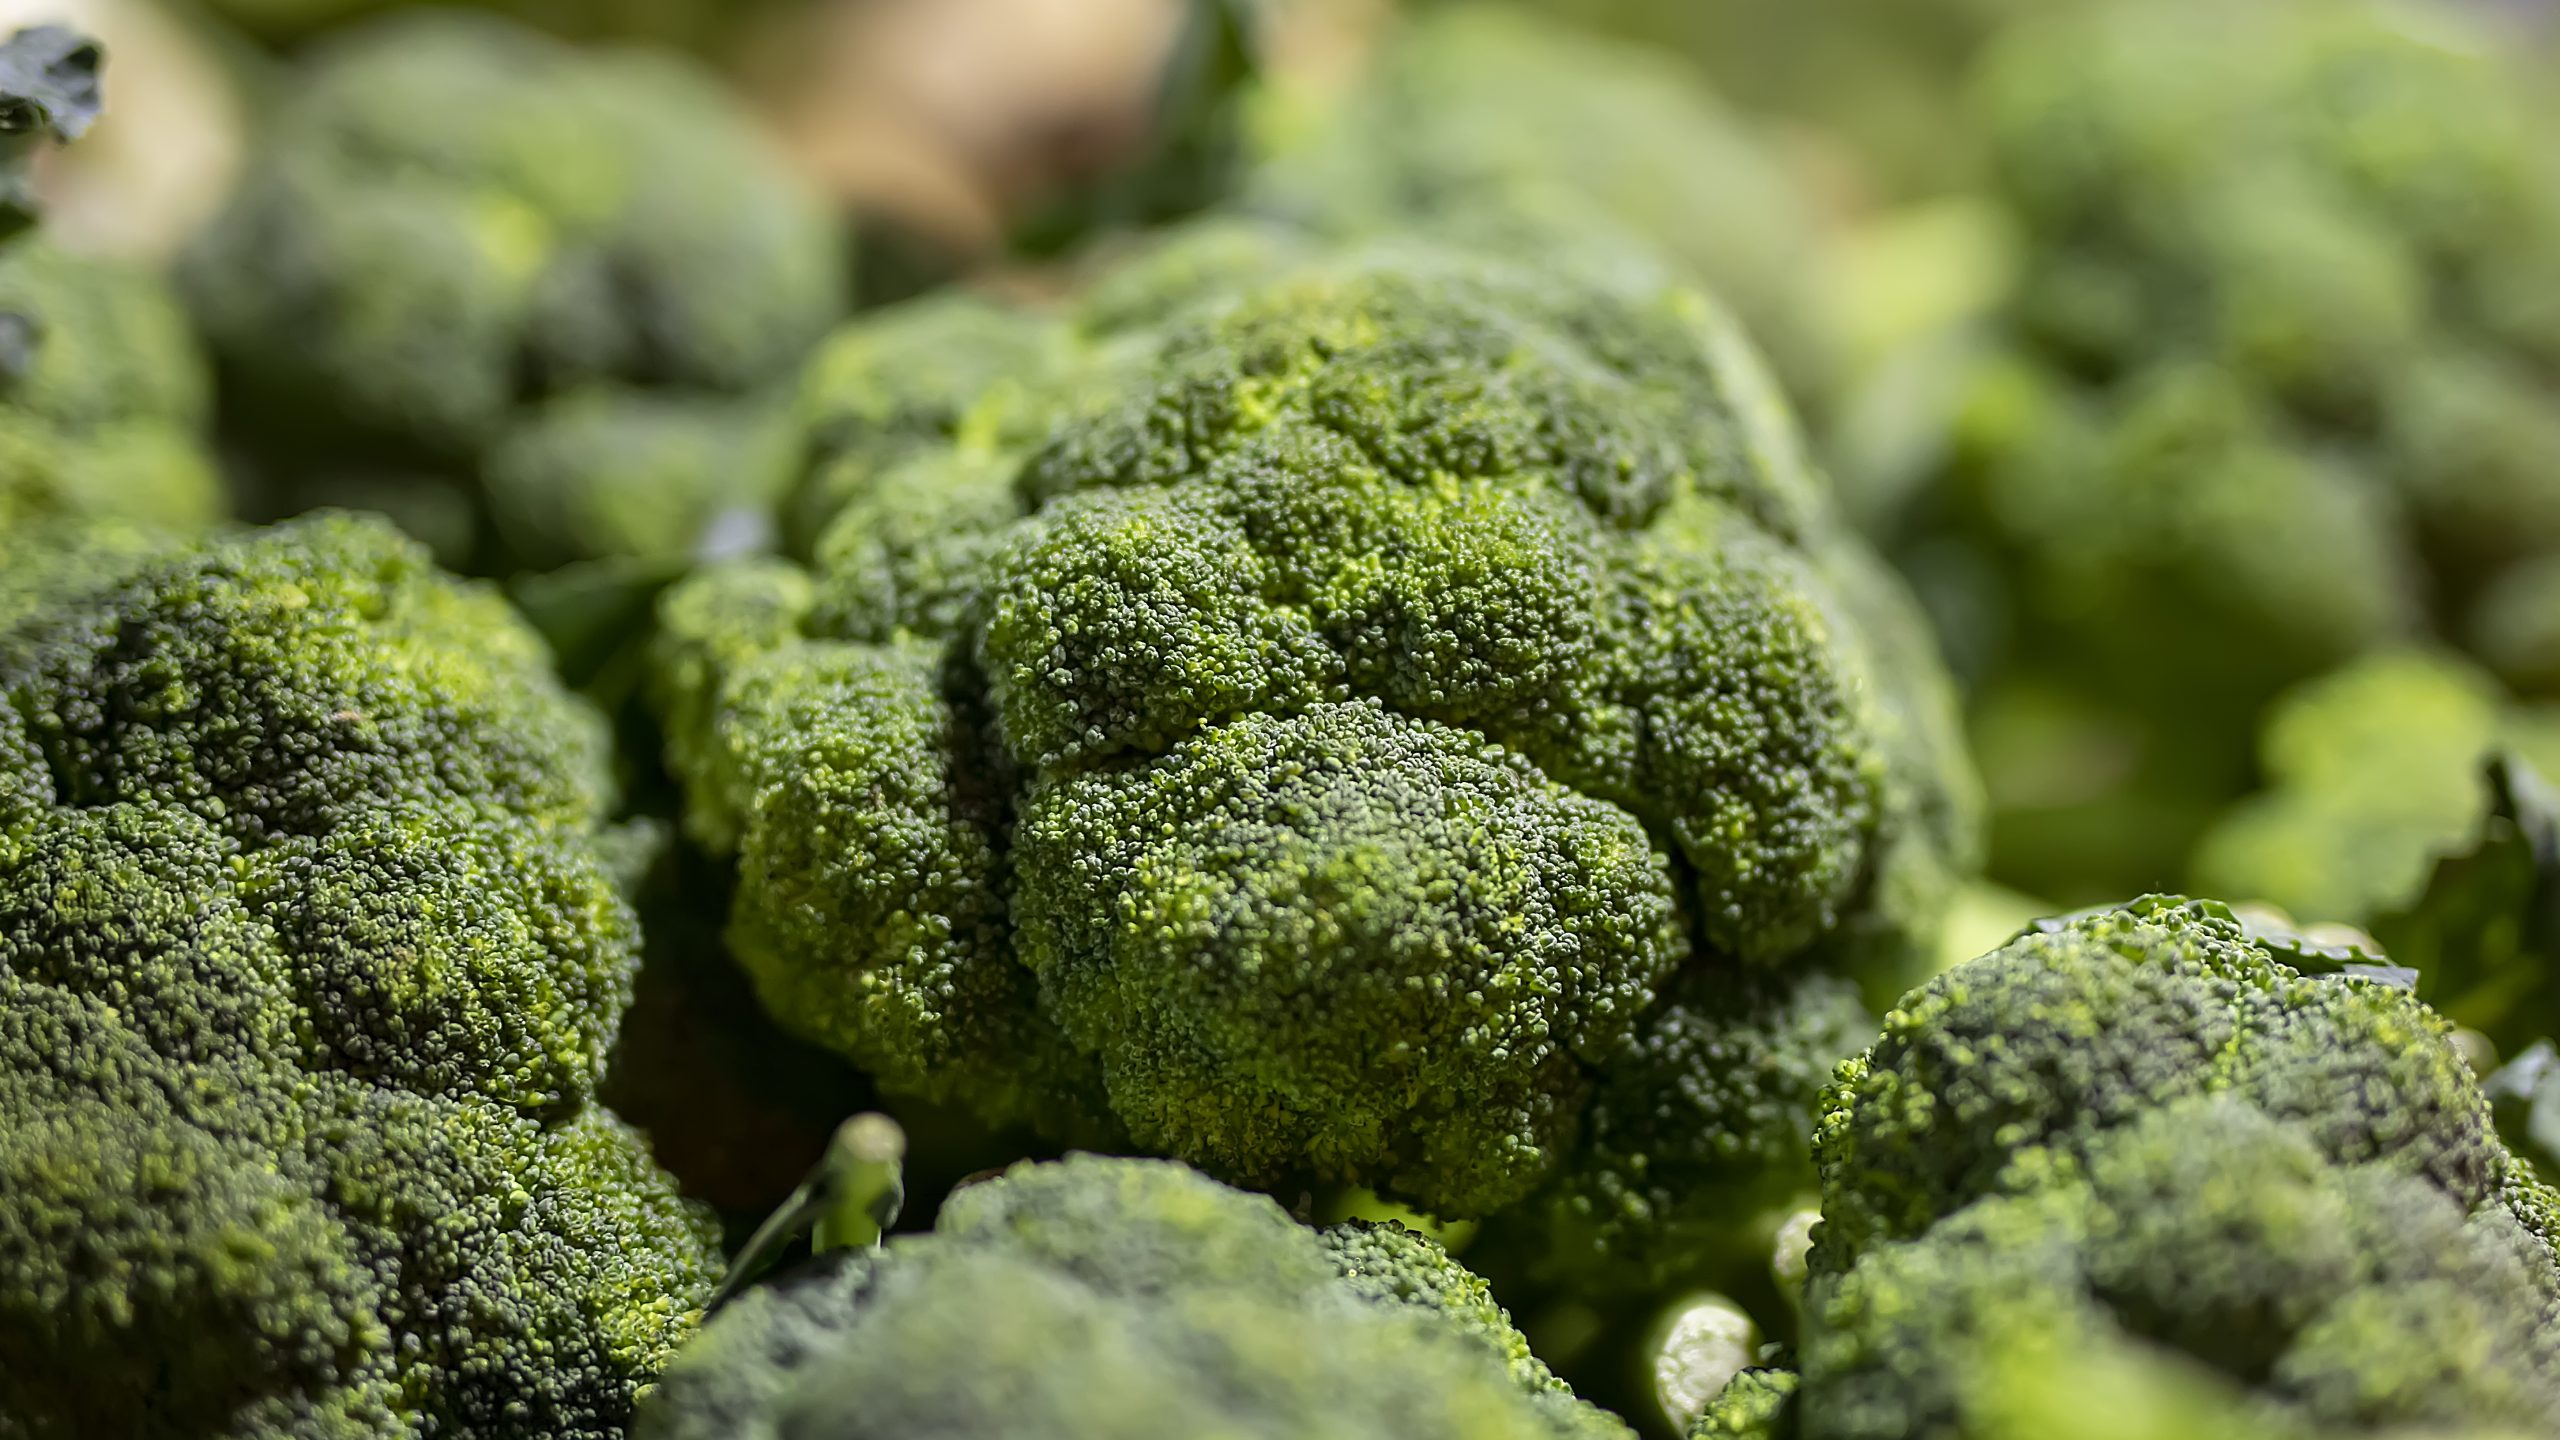 A Broccoli on Focus